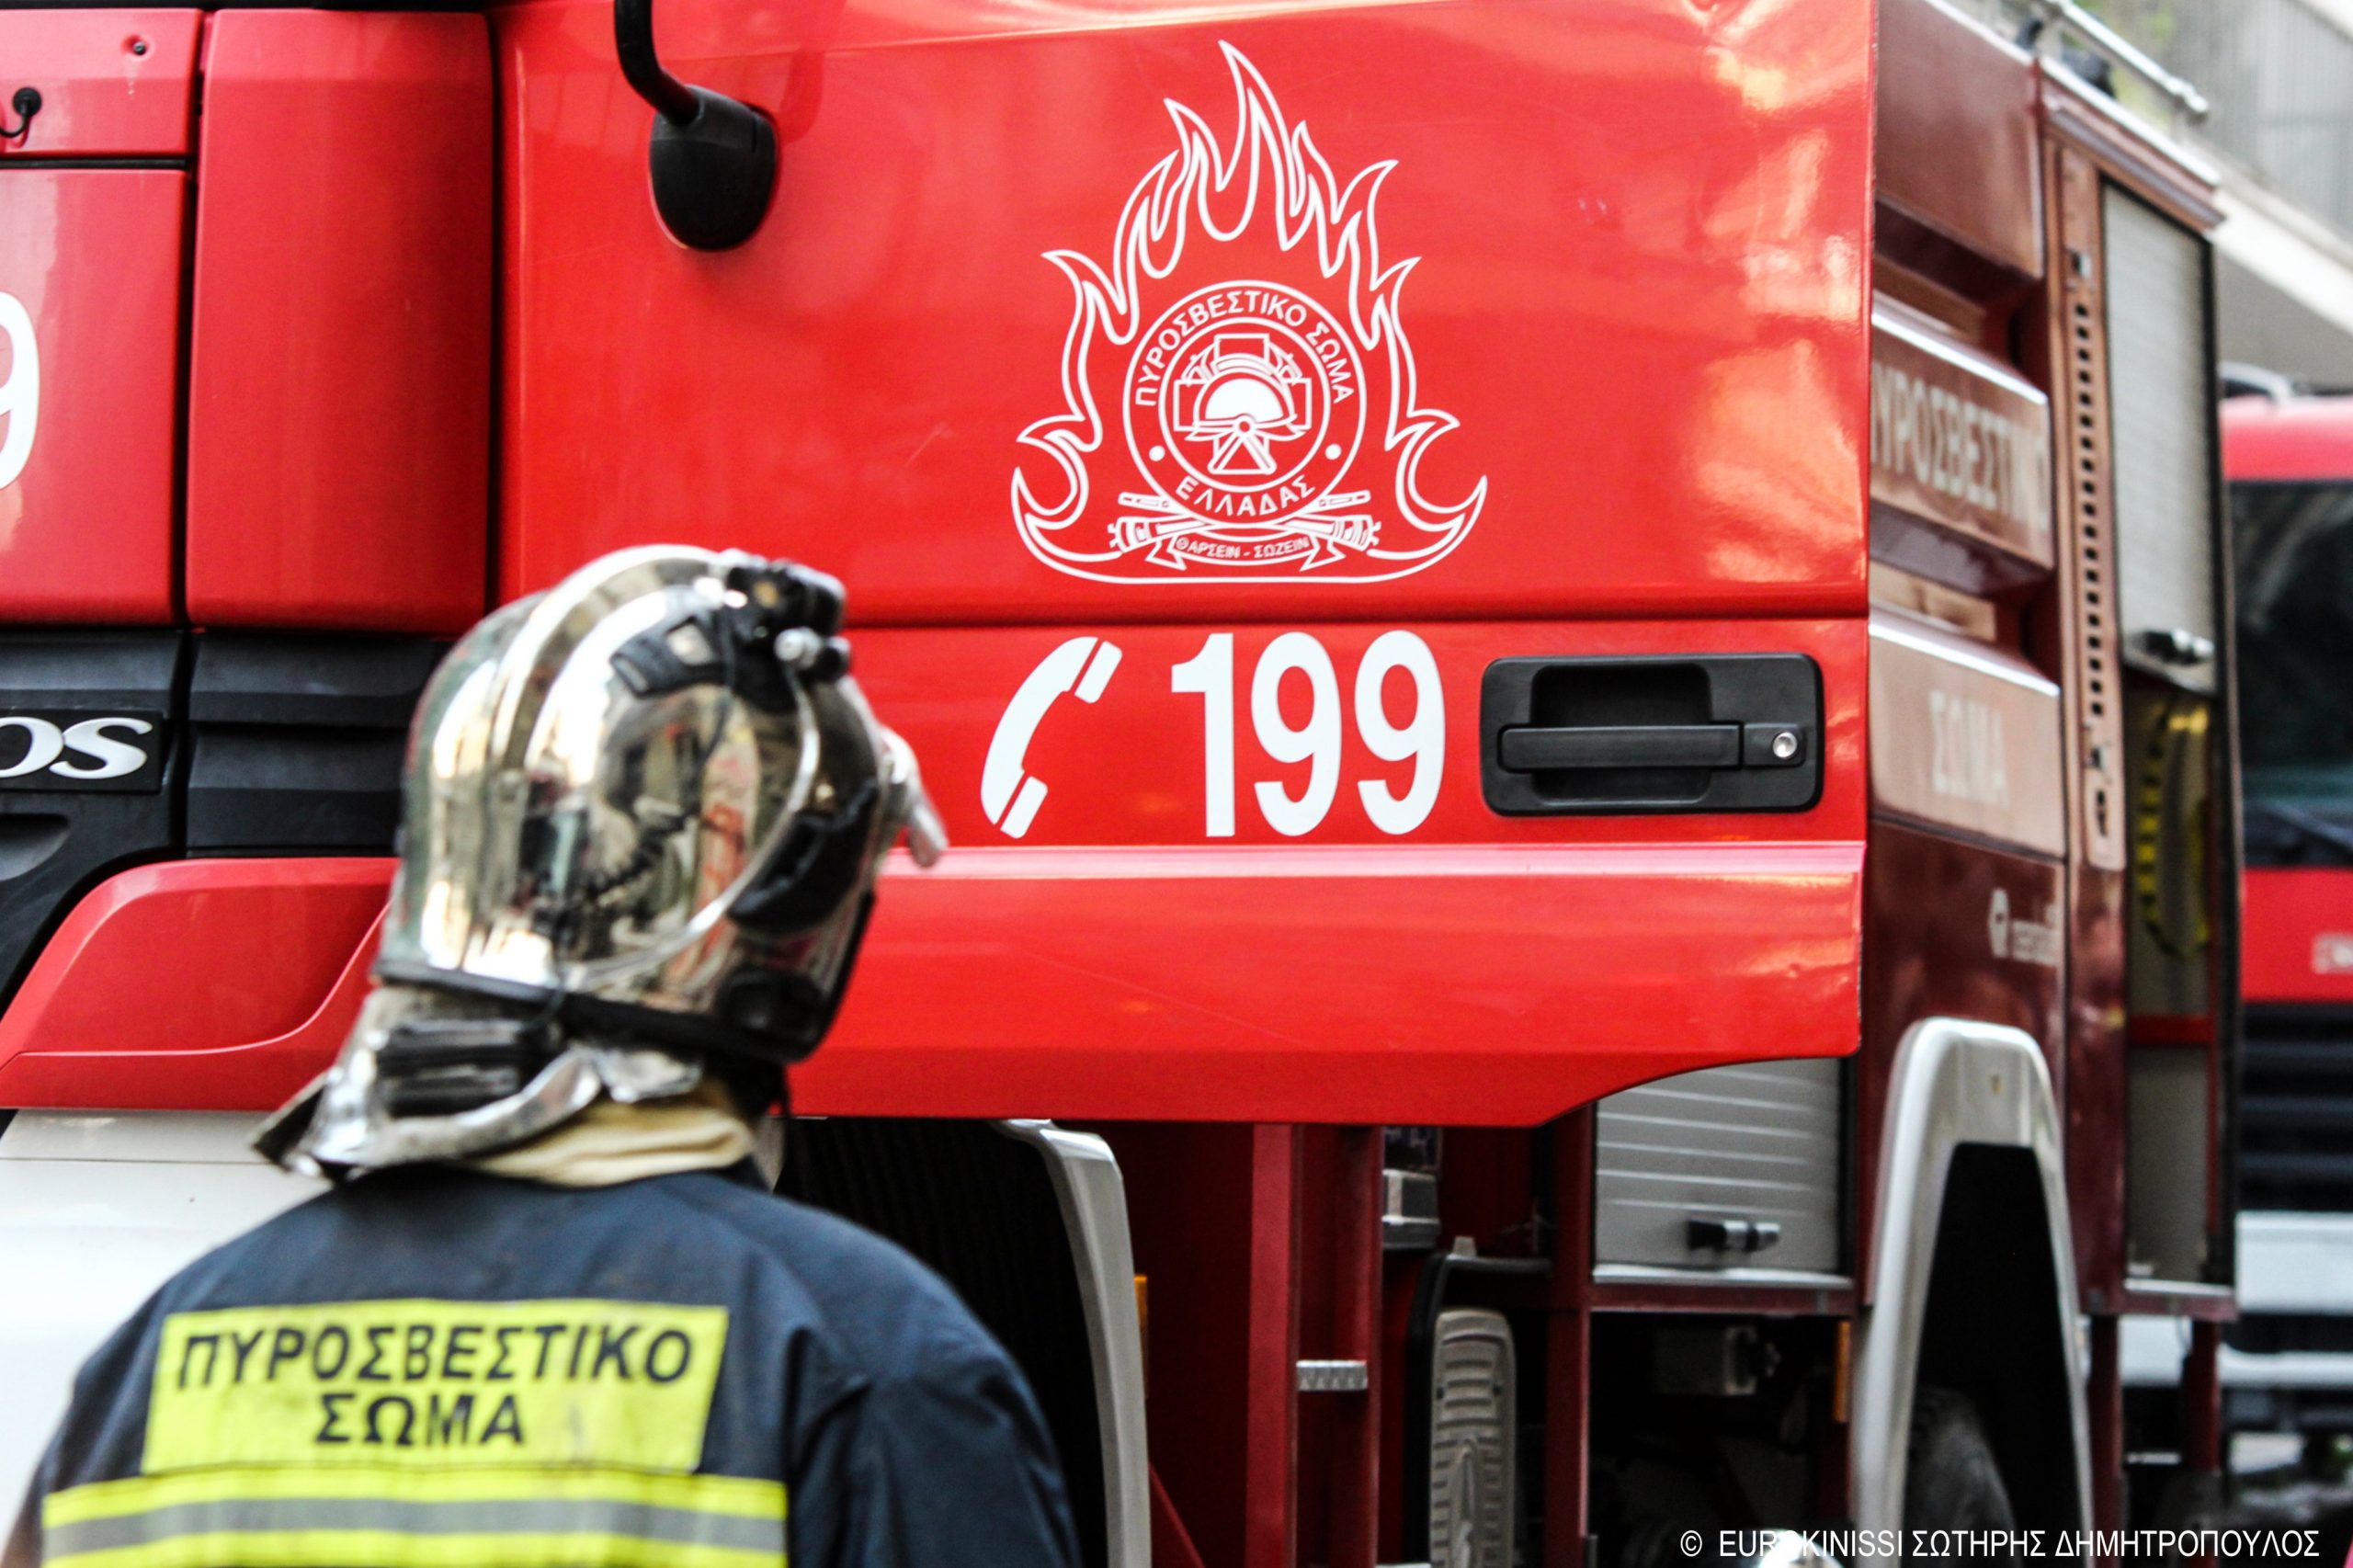 Μεγάλη φωτιά στις Αχαρνές! Σπεύδουν οχήματα της πυροσβεστικής